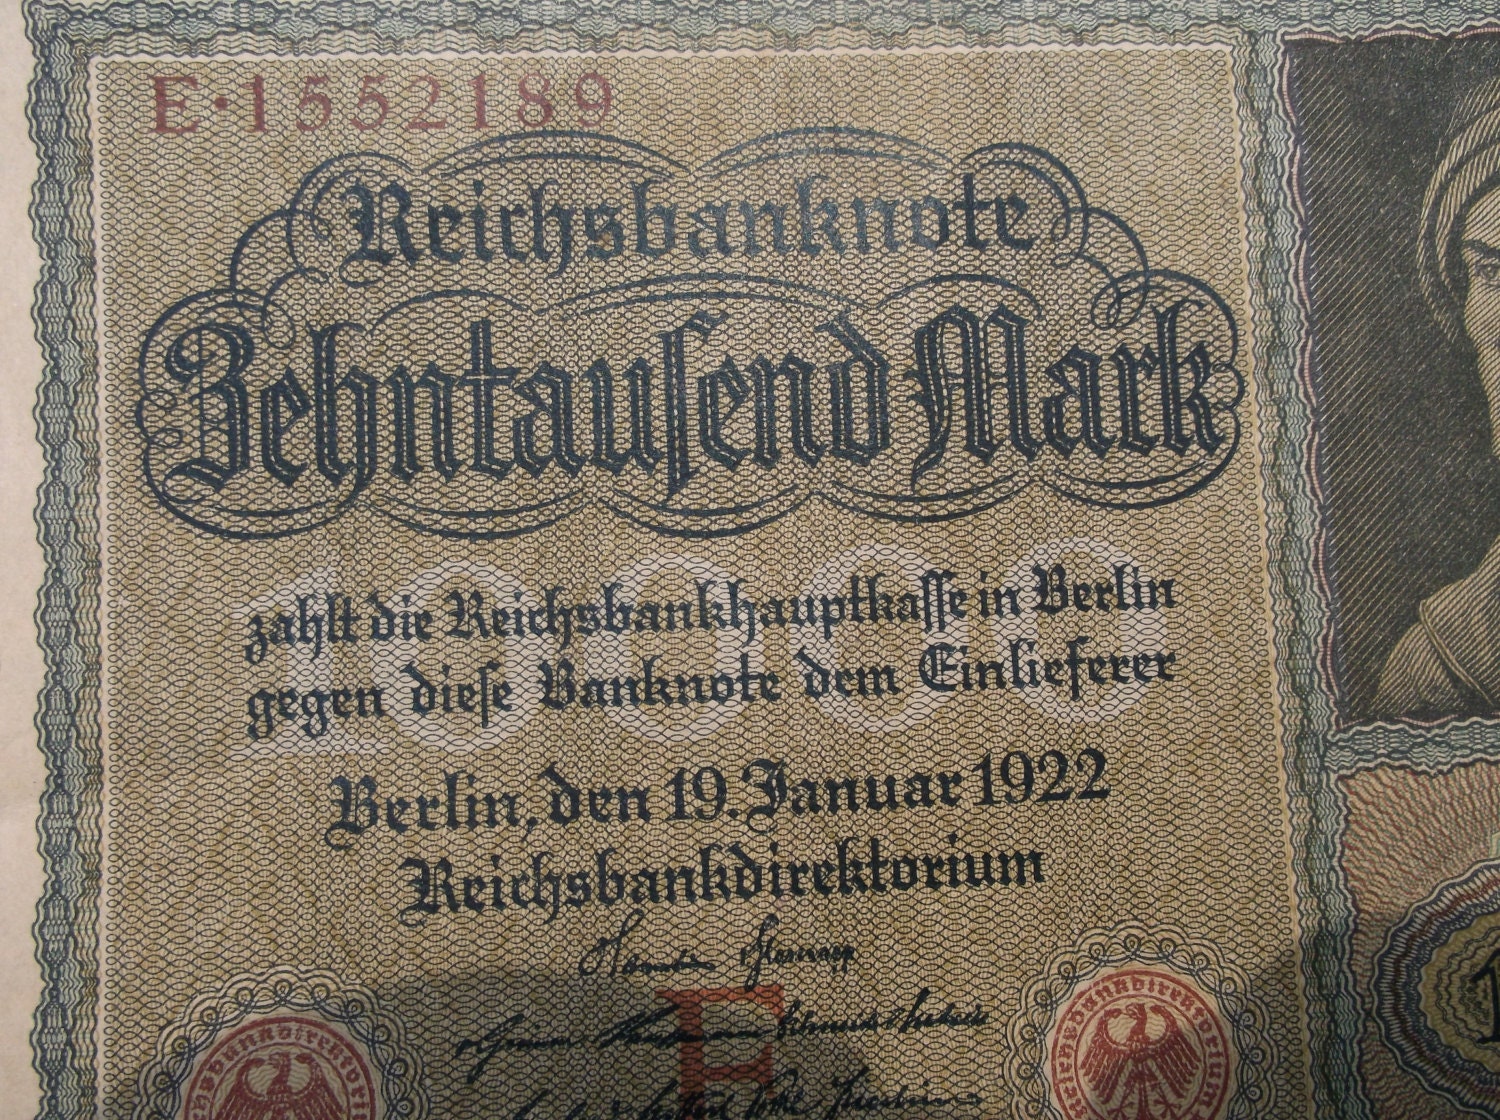 reichsbanknote behntaufend mark 1922